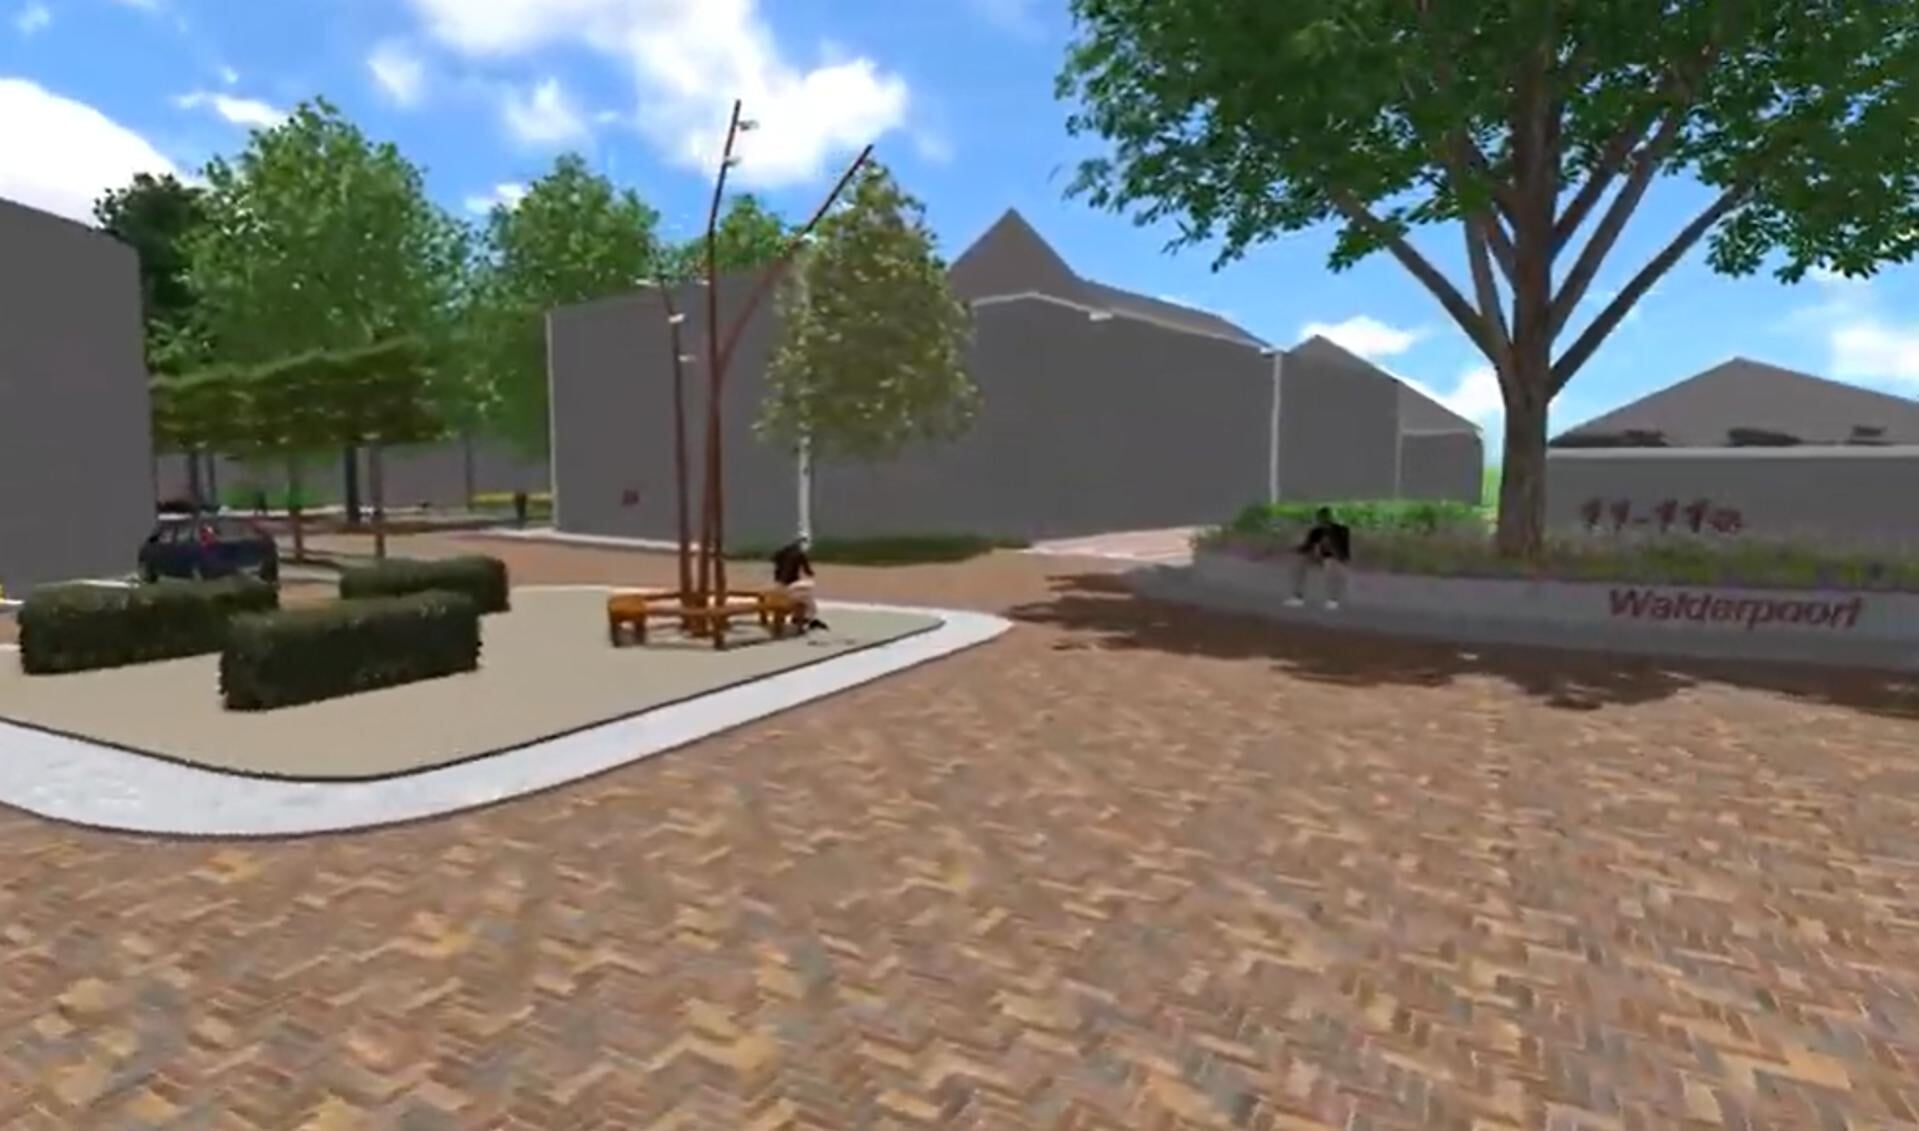 Impressie van de Walderpoort uit de 3D-animatie op de website van de gemeente Lochem